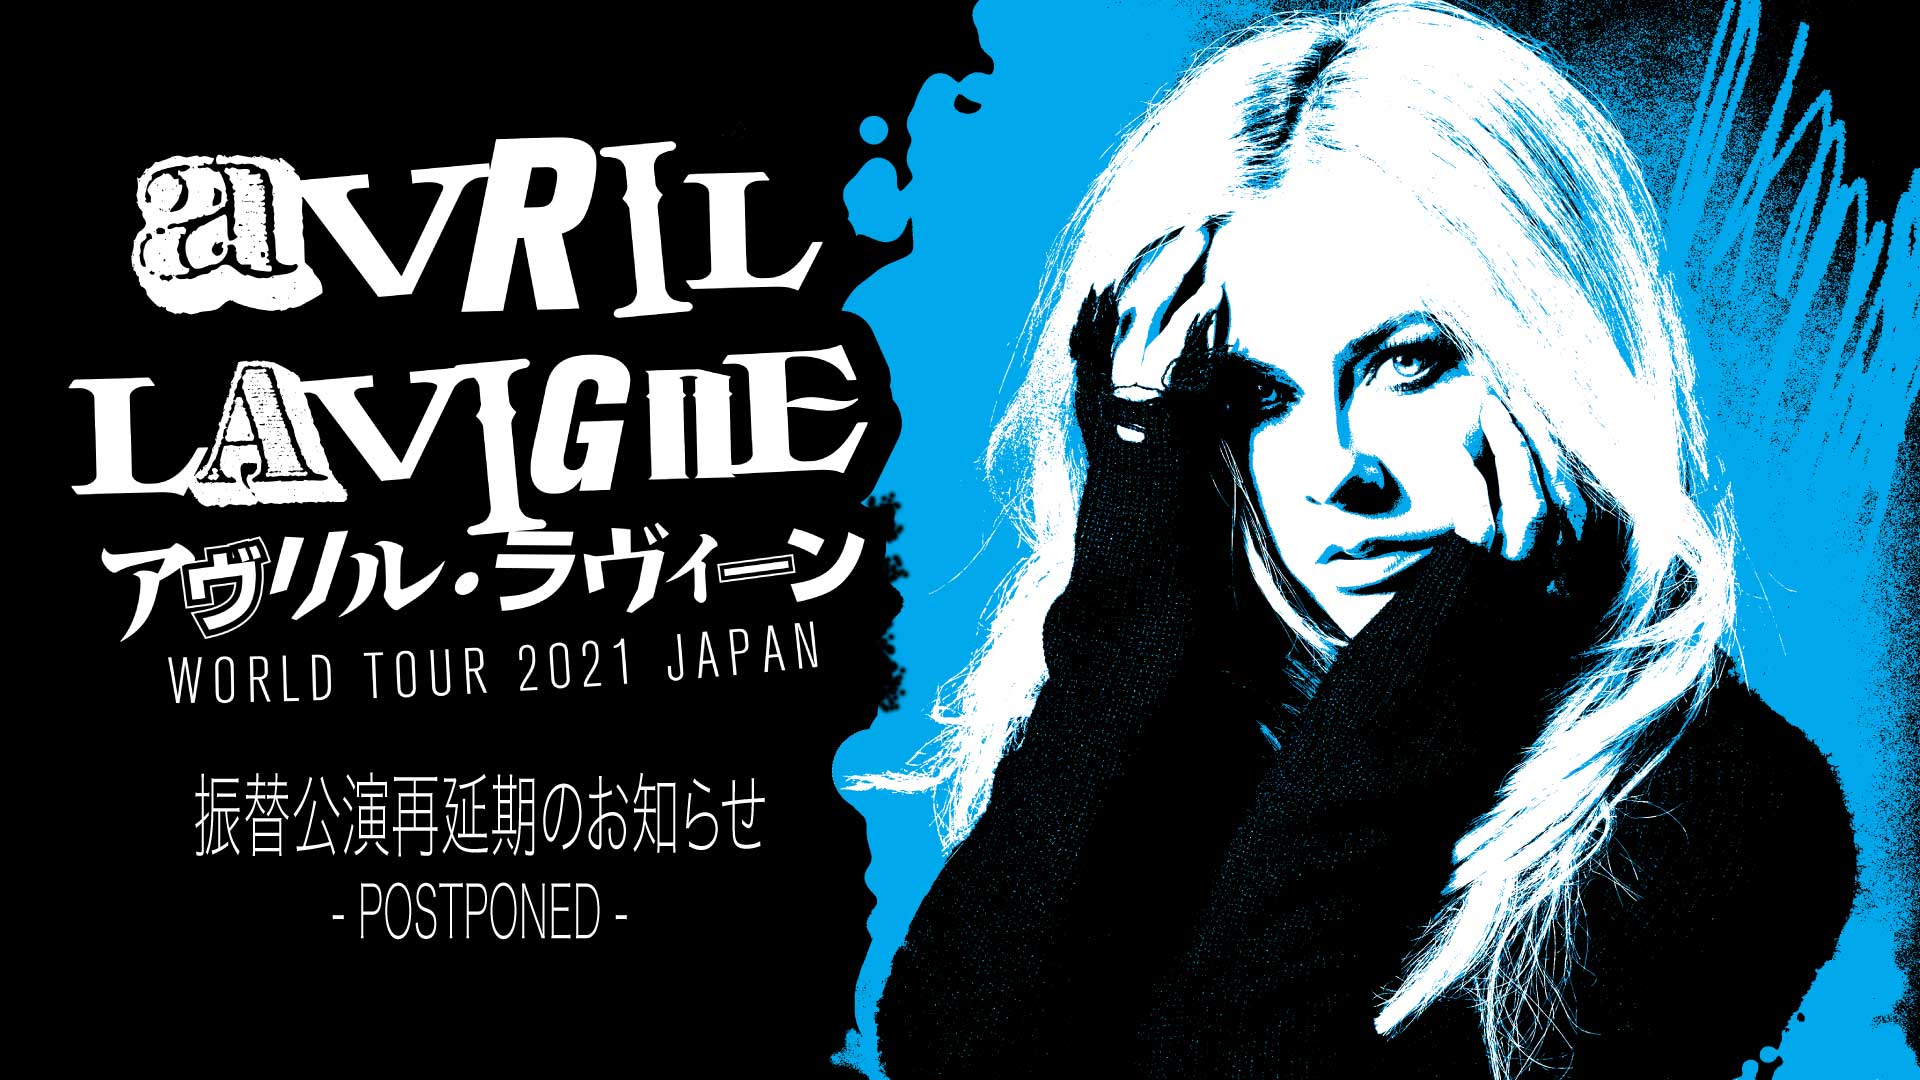 Avril Lavigne アヴリル ラヴィーン World Tour 21 Japan